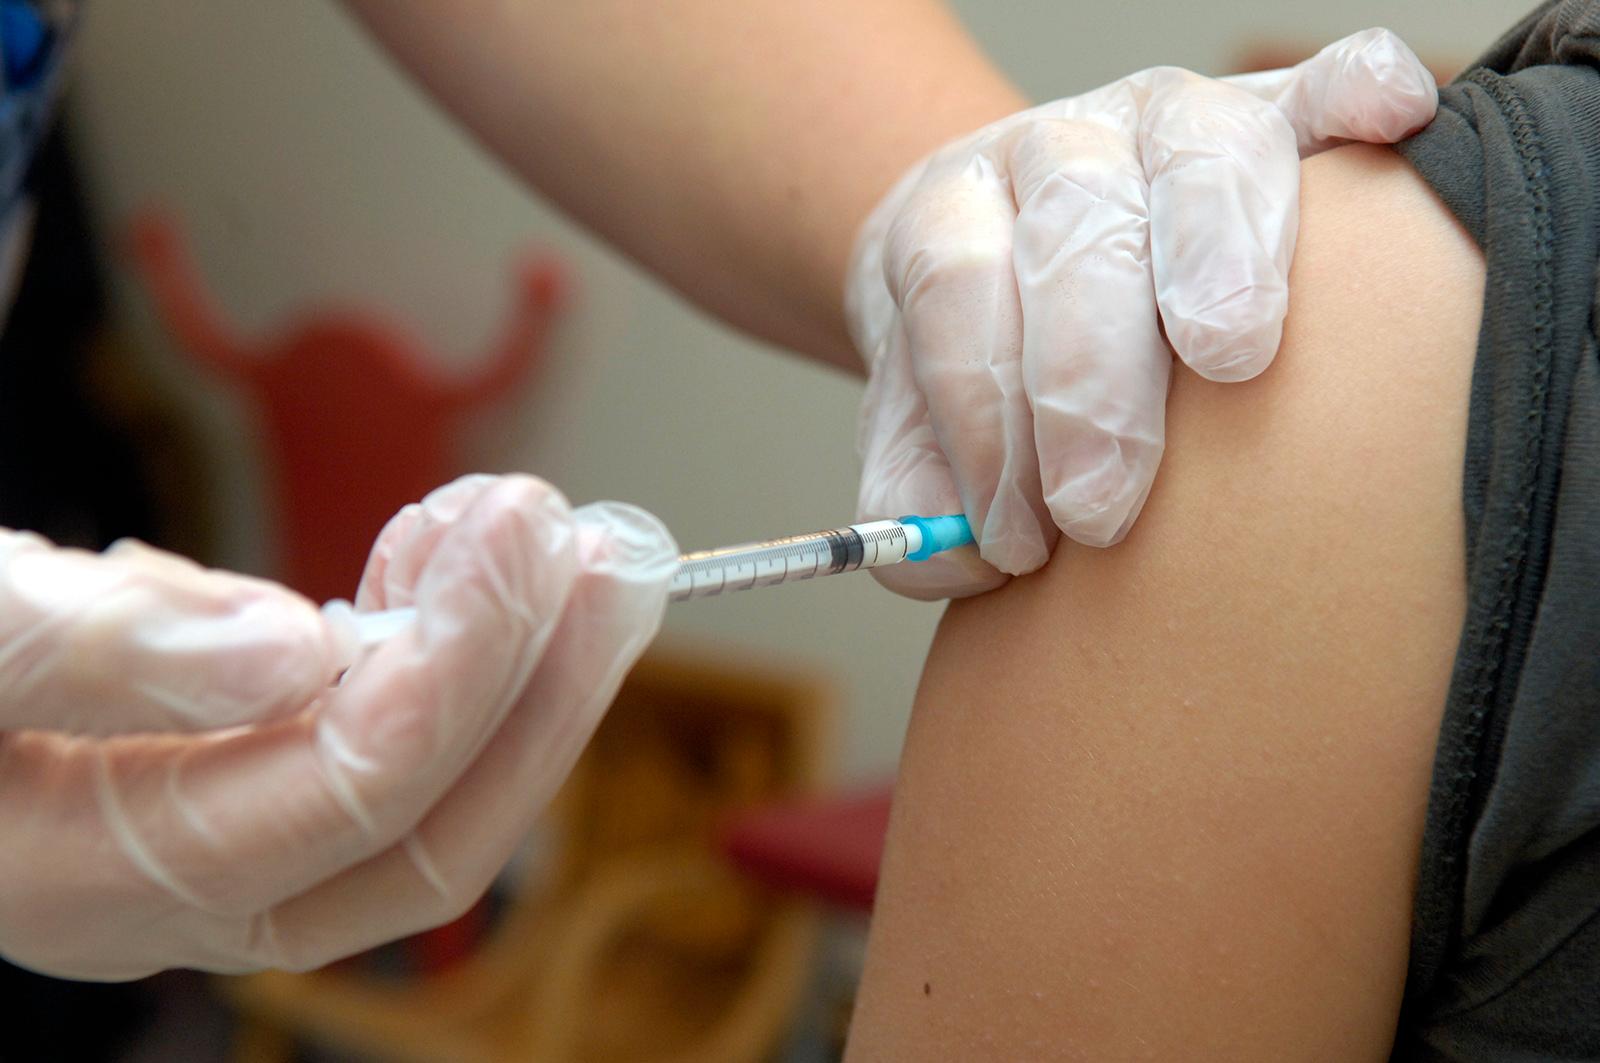 Det finns en risk att Svininfluensen tar över spridningen, enligt Folkhälsomyndigheten.